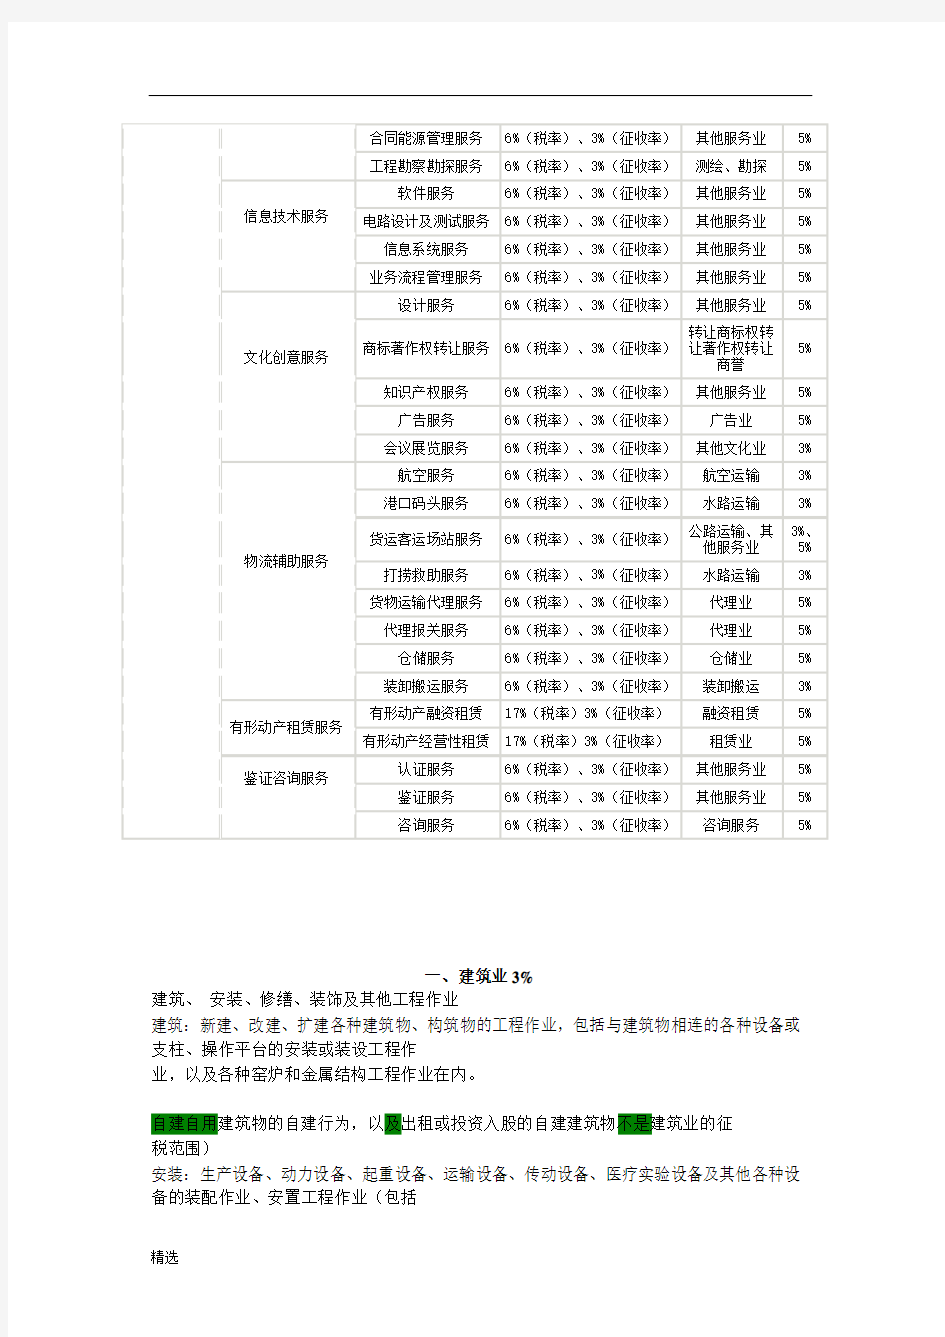 范文营业税税目税率表.docx